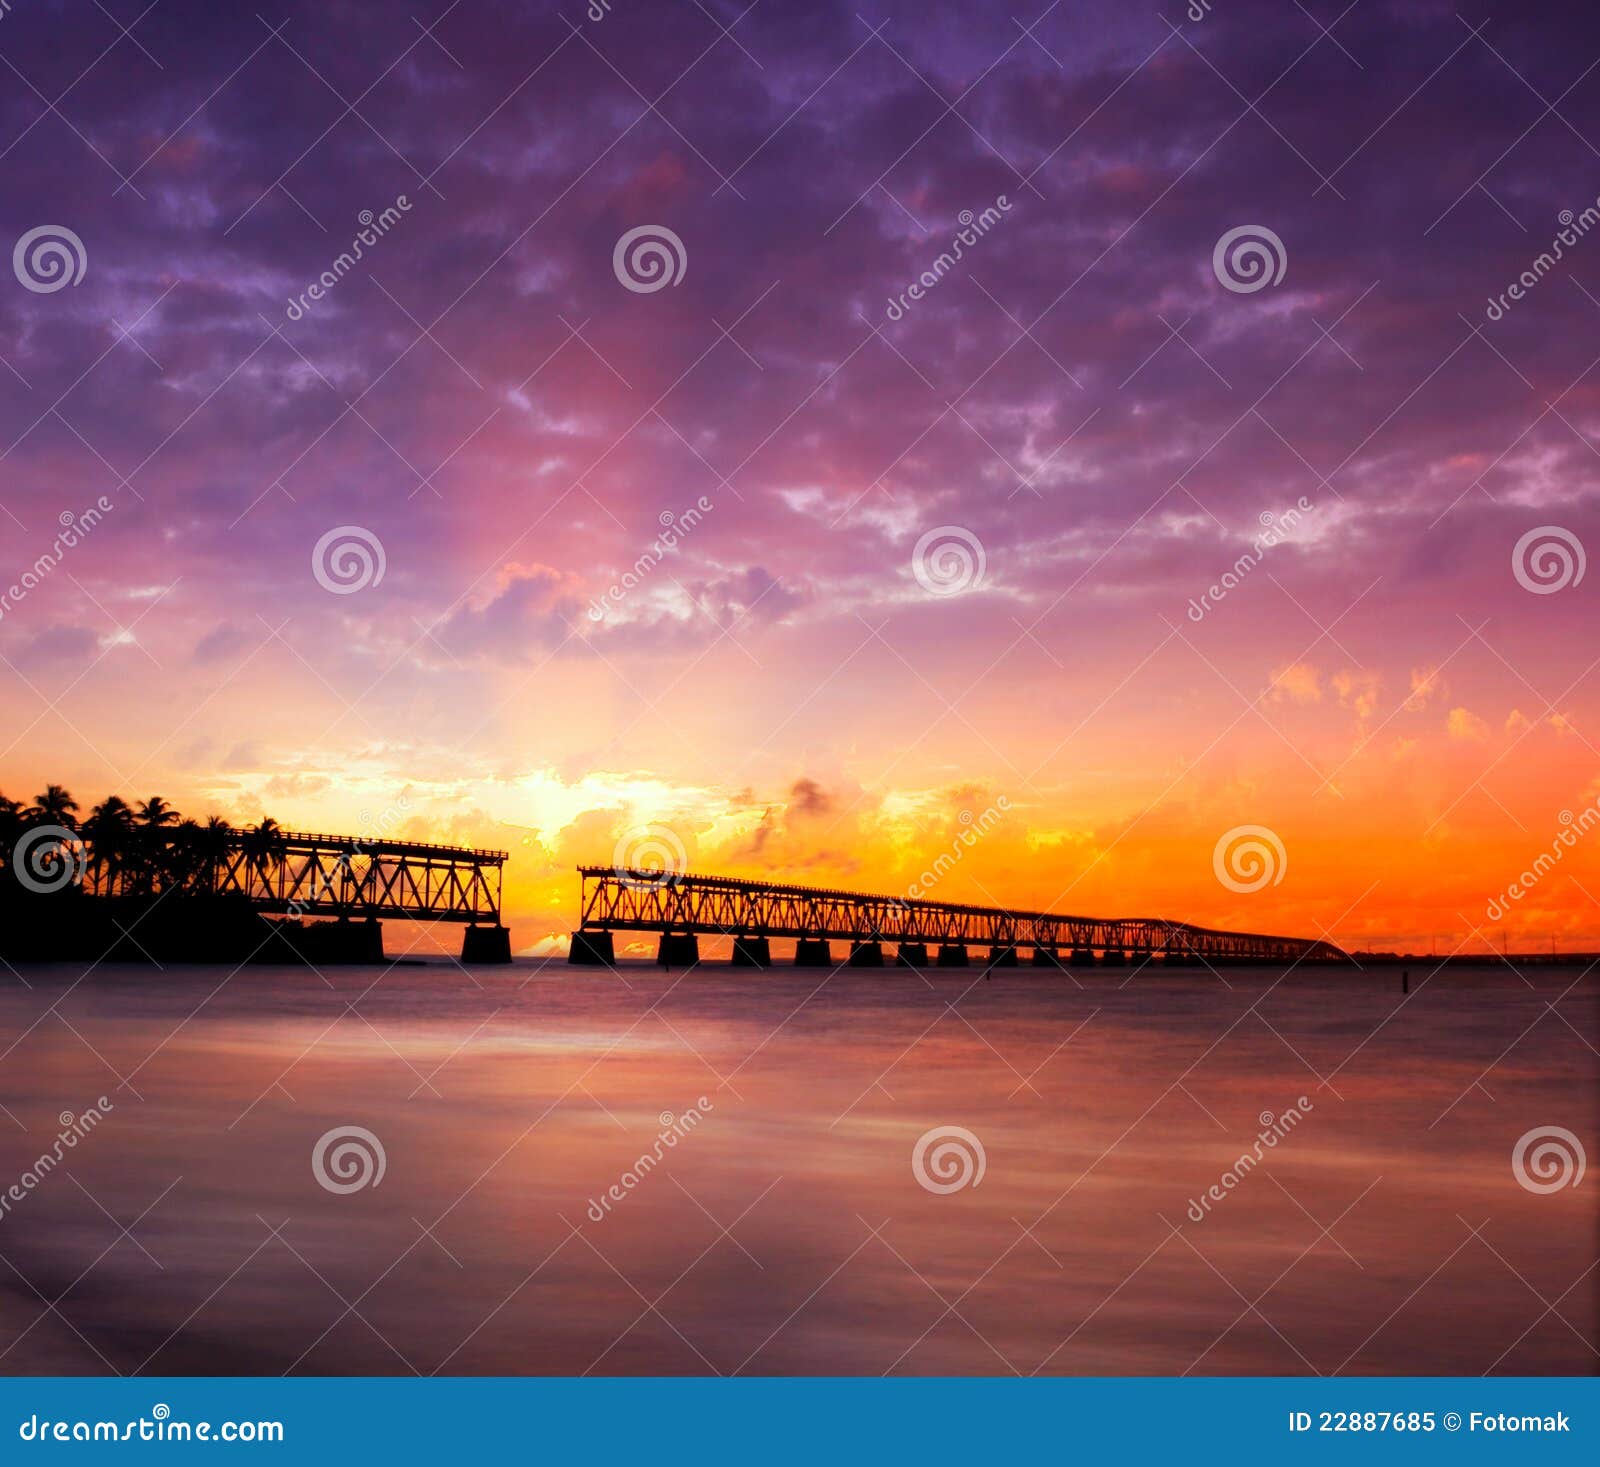 sunset over bridge in florida keys, bahia honda st